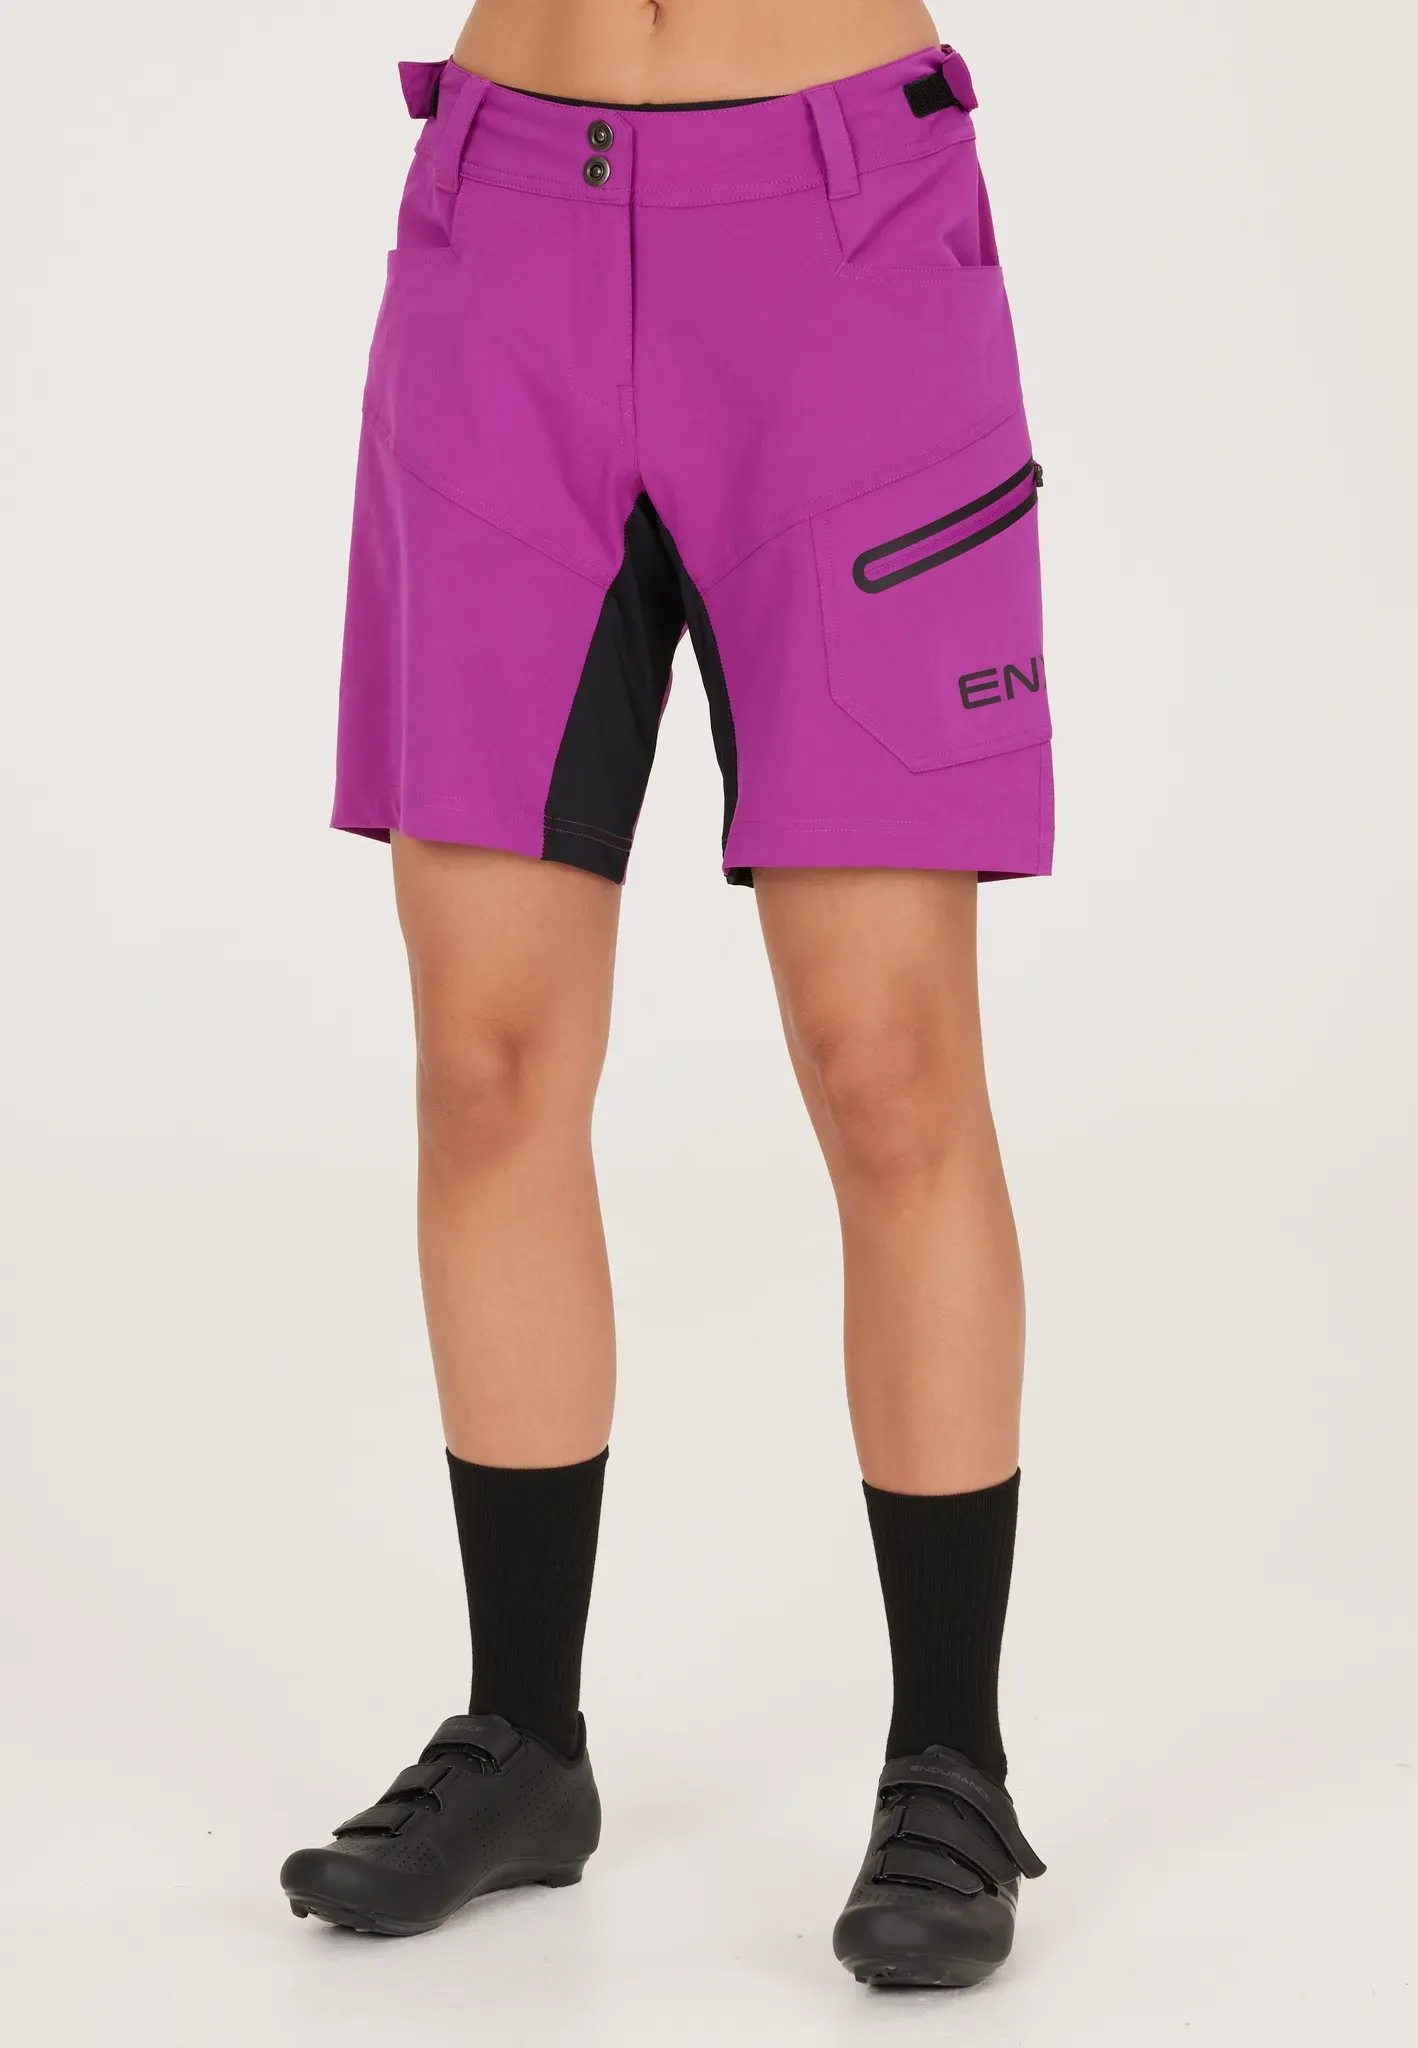 Radhose ENDURANCE "Jamilla W 2 in 1 Shorts" Gr. 42, EURO-Größen, lila Damen Hosen Sporthosen mit herausnehmbarer Innen-Tights